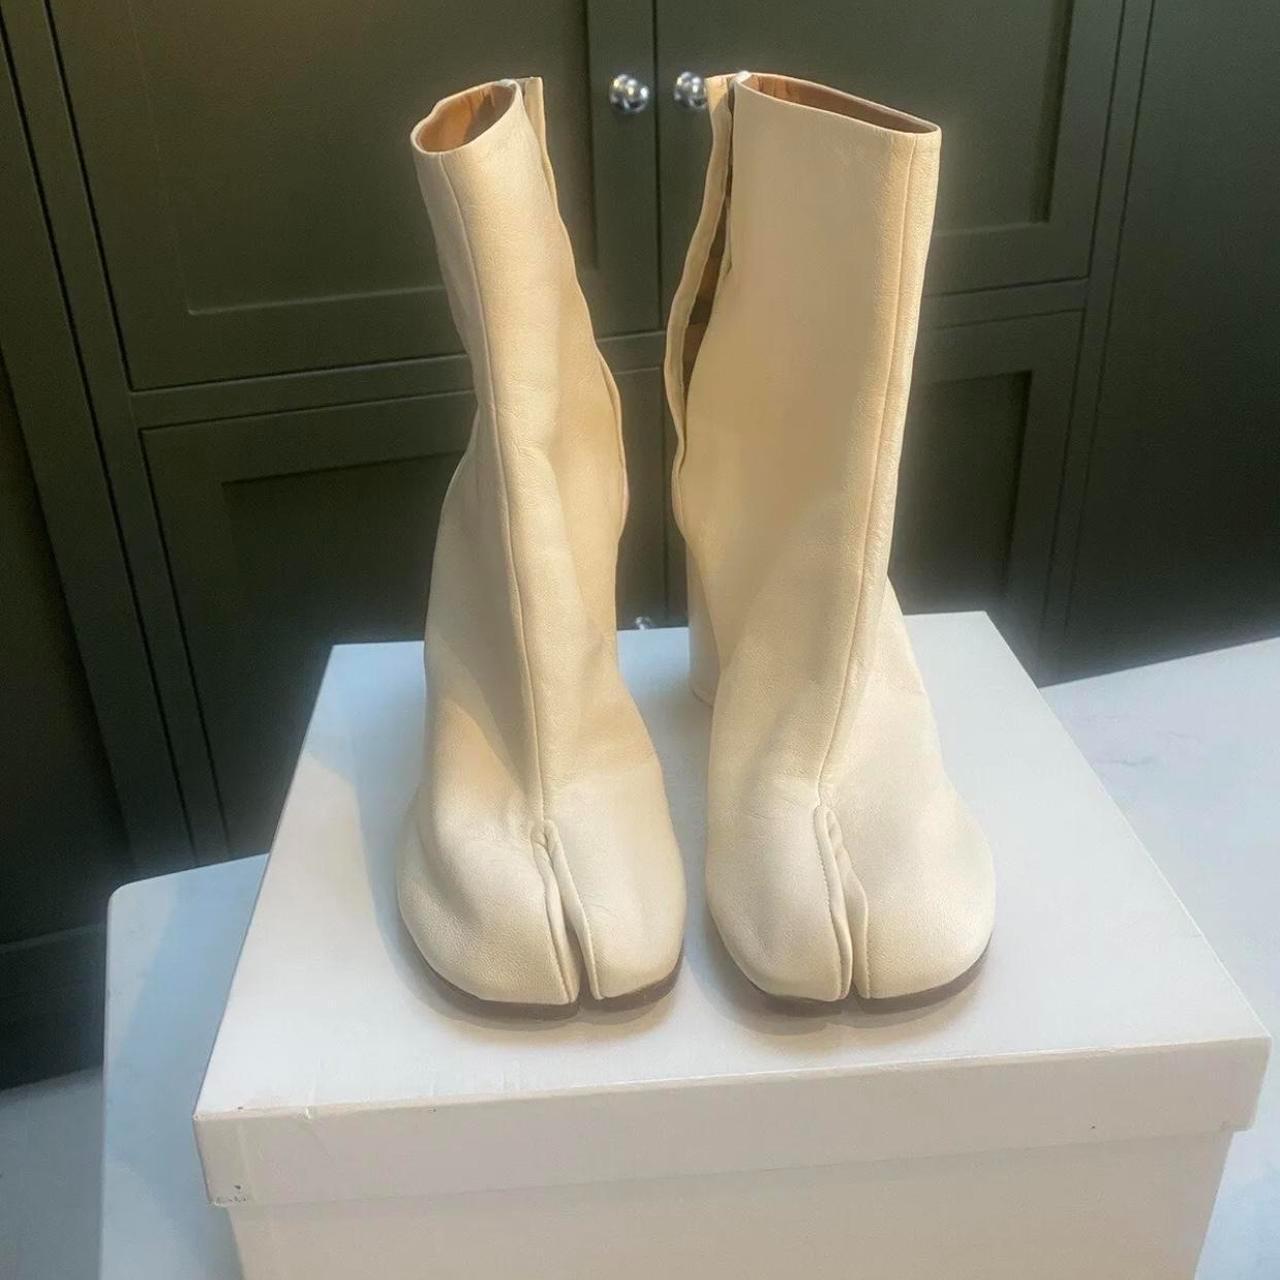 Louis Vuitton “Rhapsody High Boots”, retail - Depop